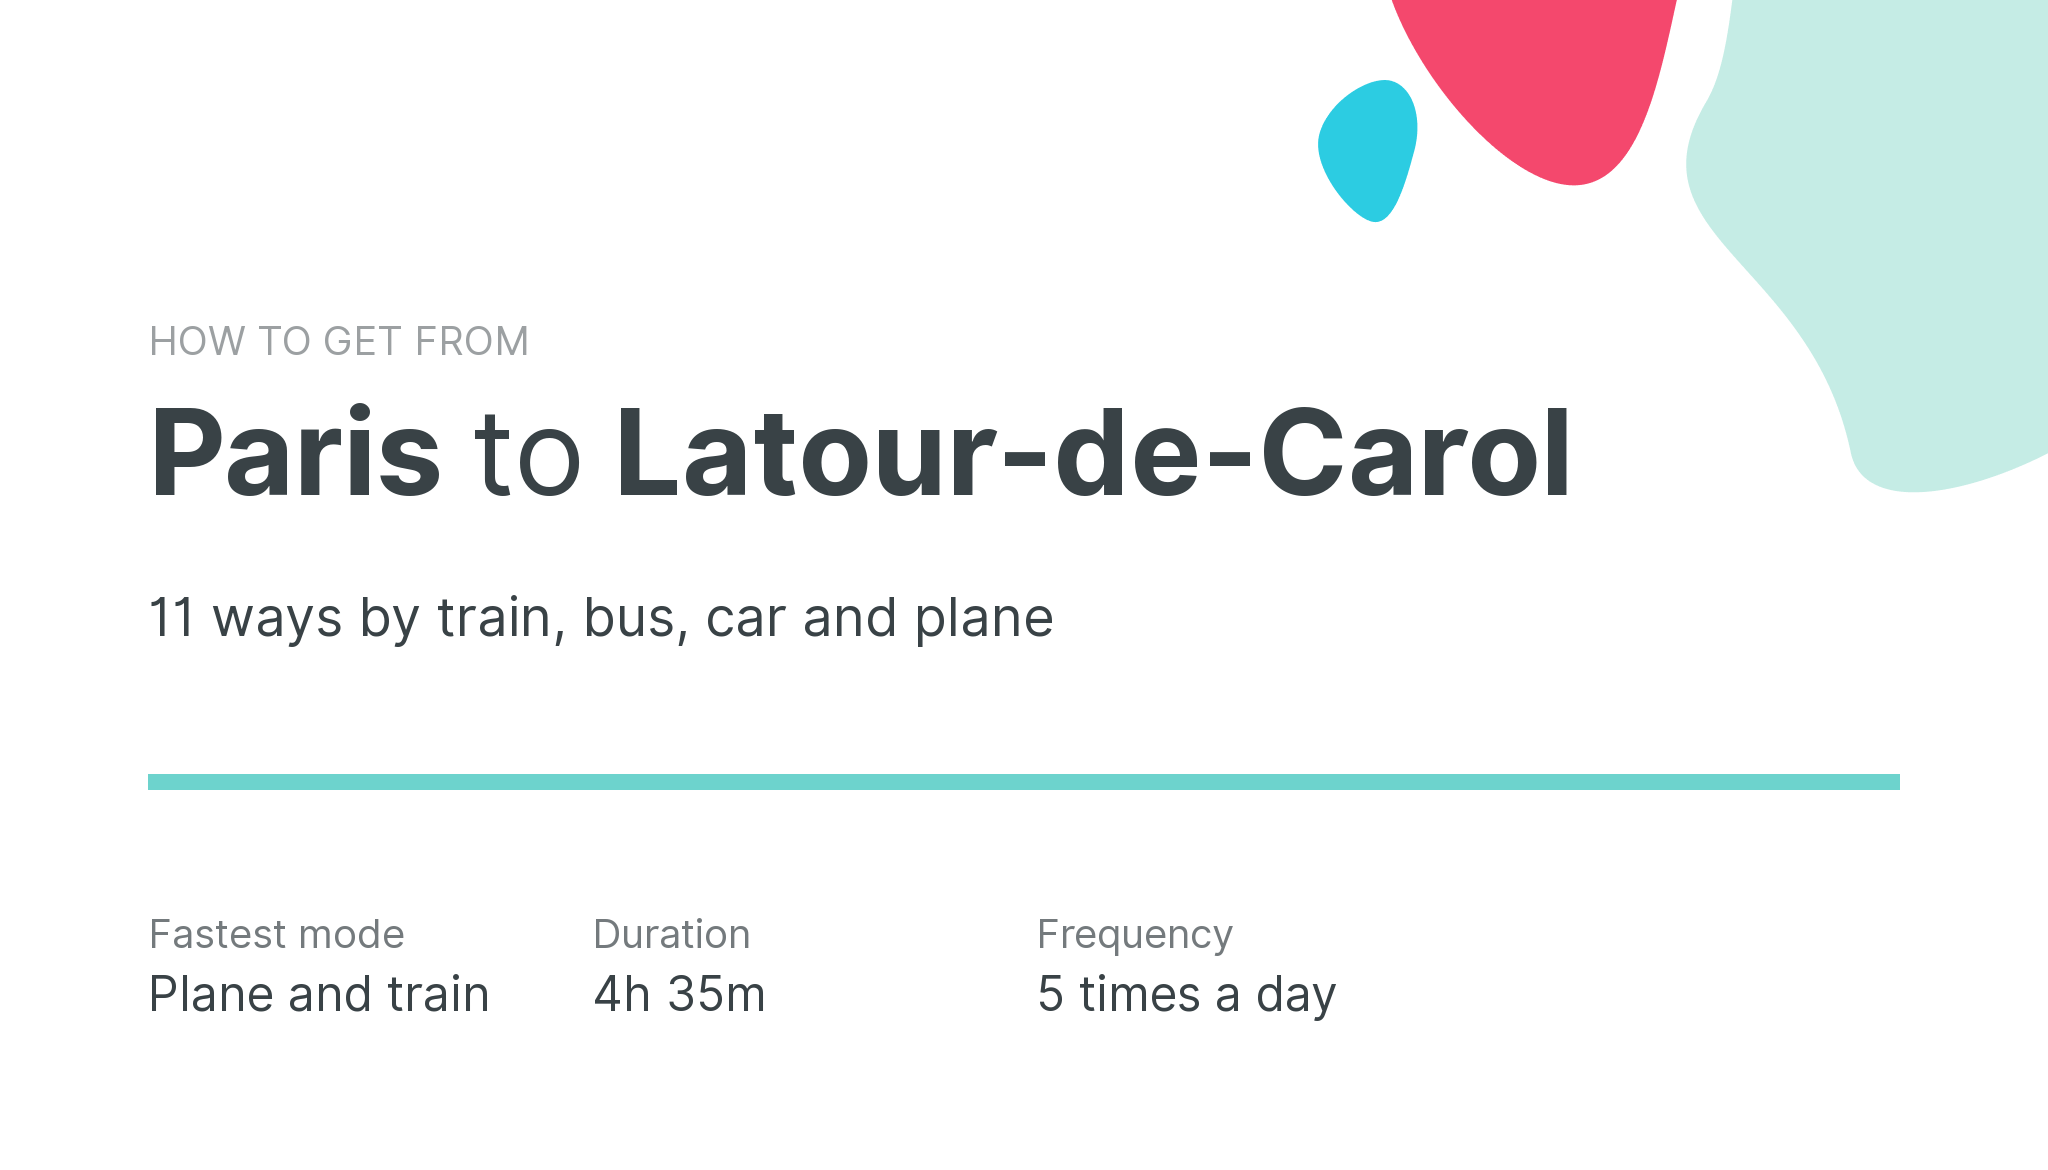 How do I get from Paris to Latour-de-Carol